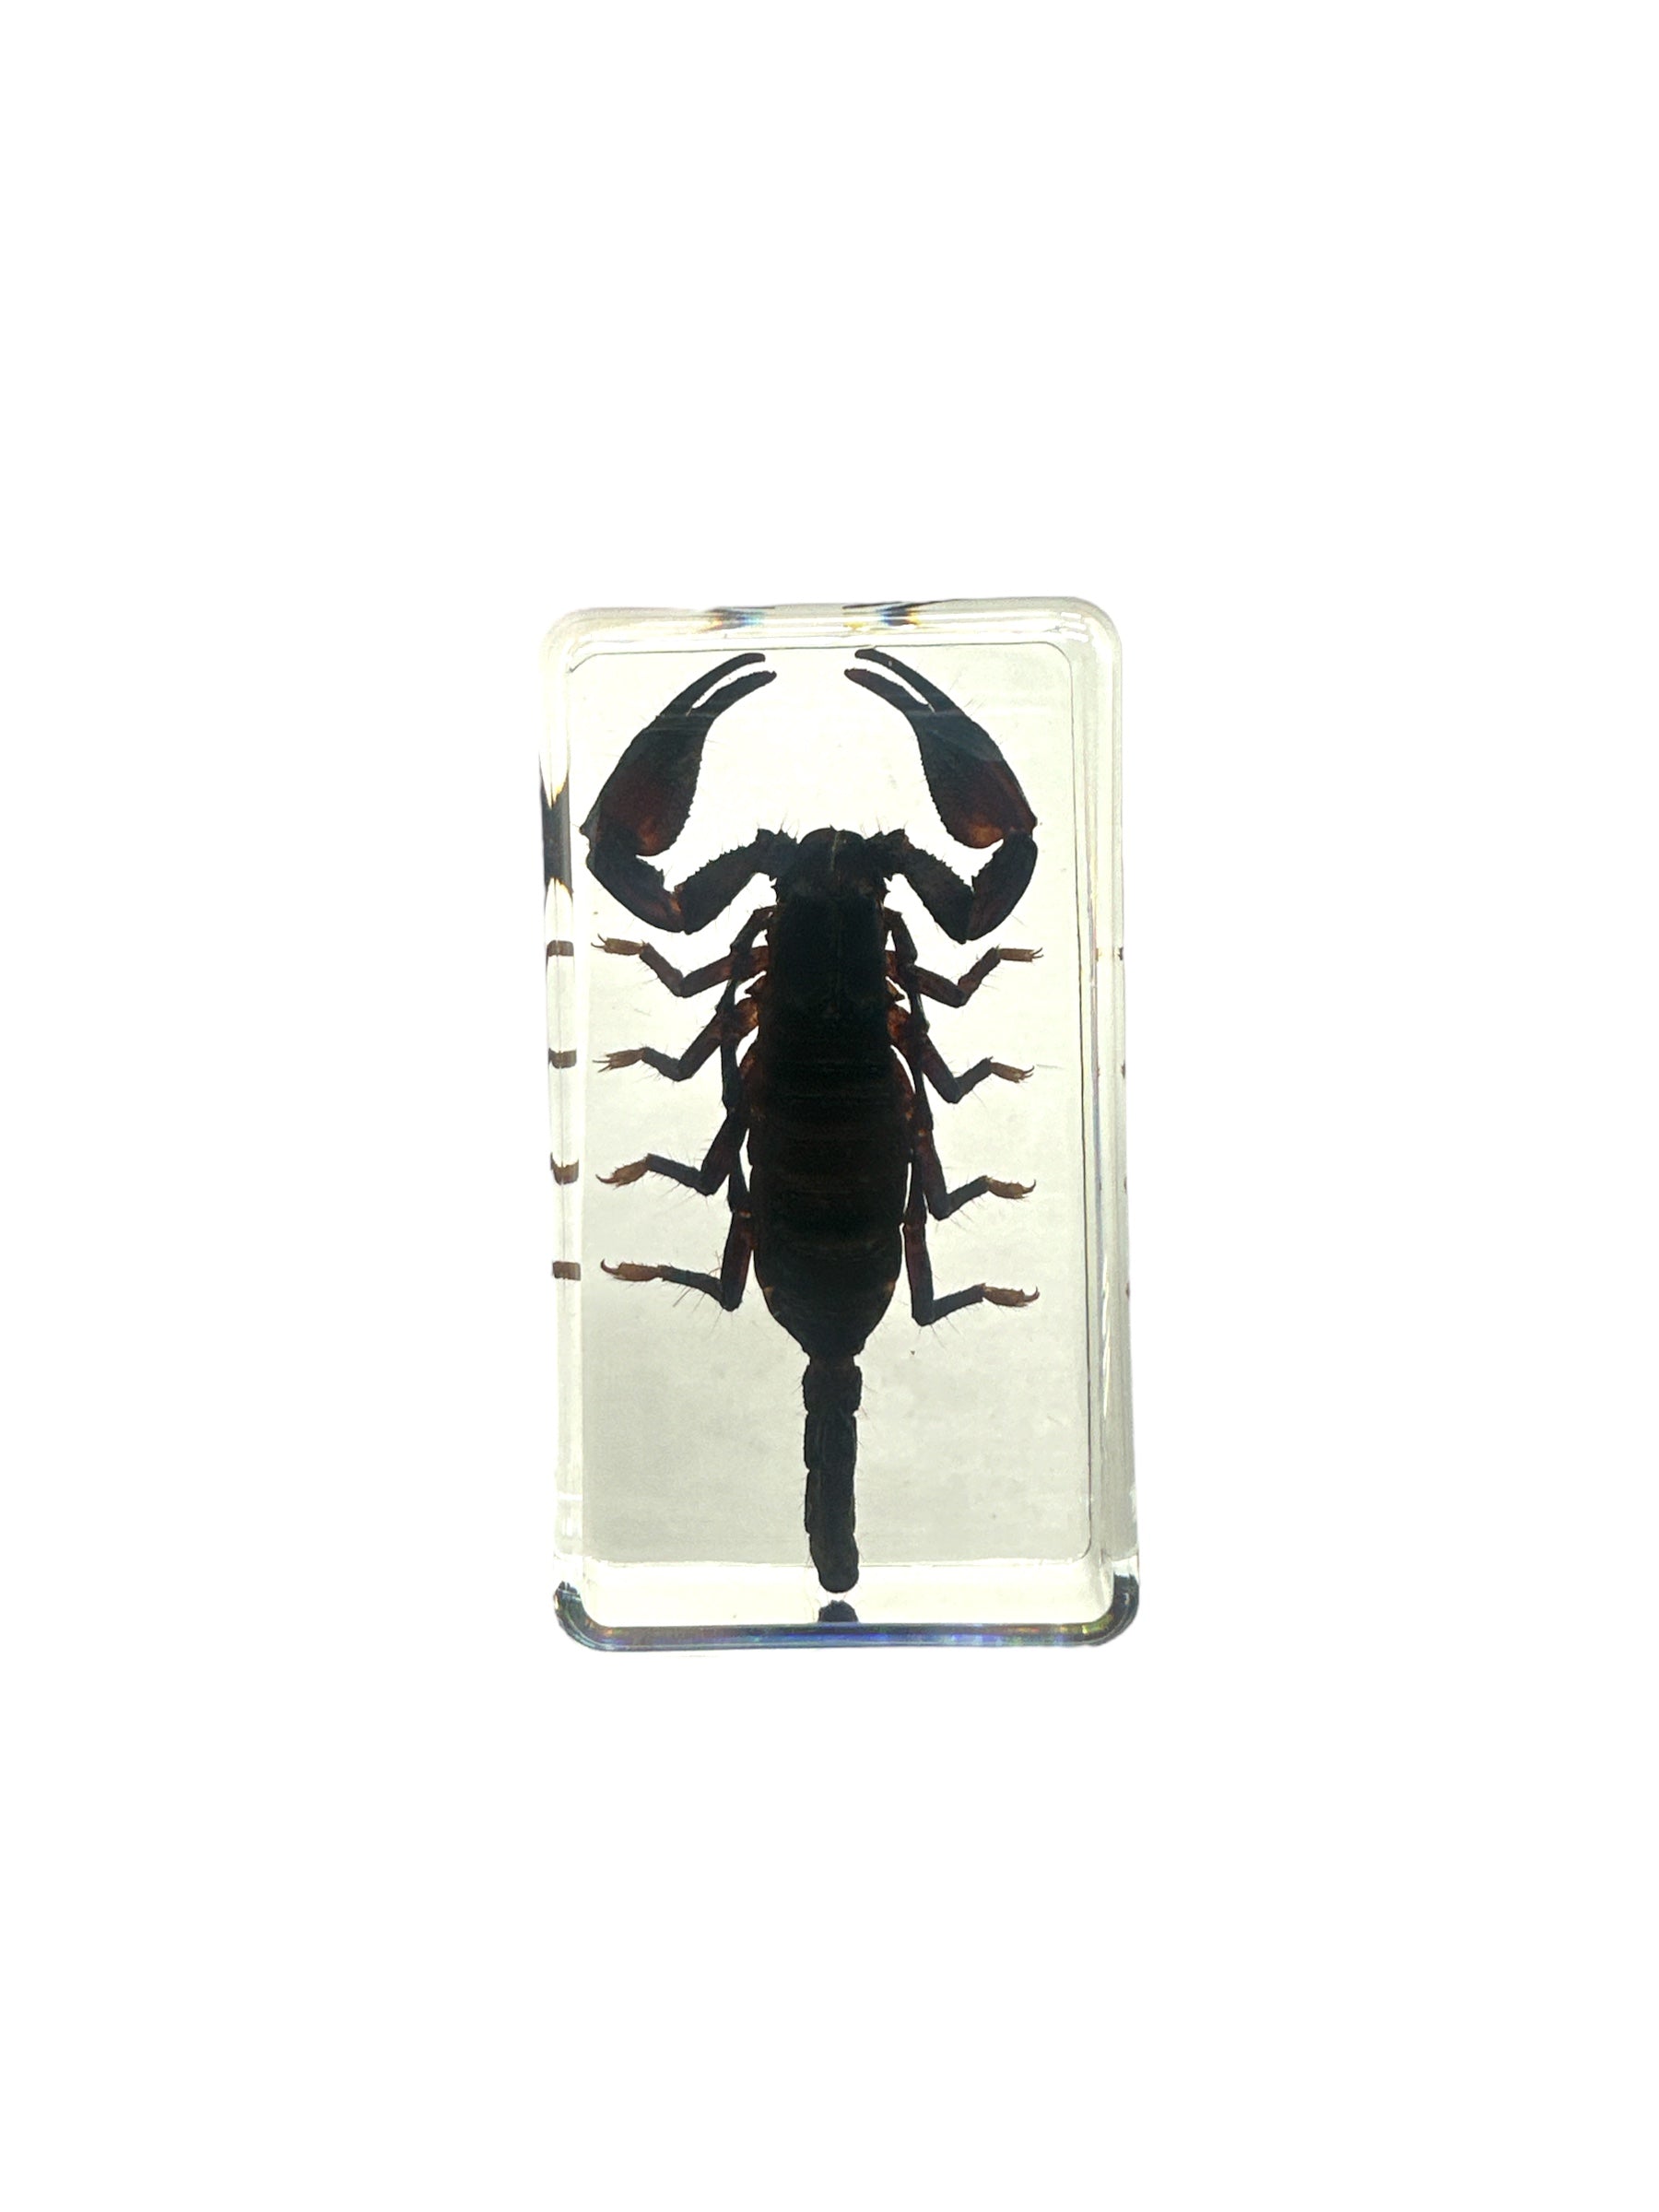 Black Scorpion - Specimen In Resin